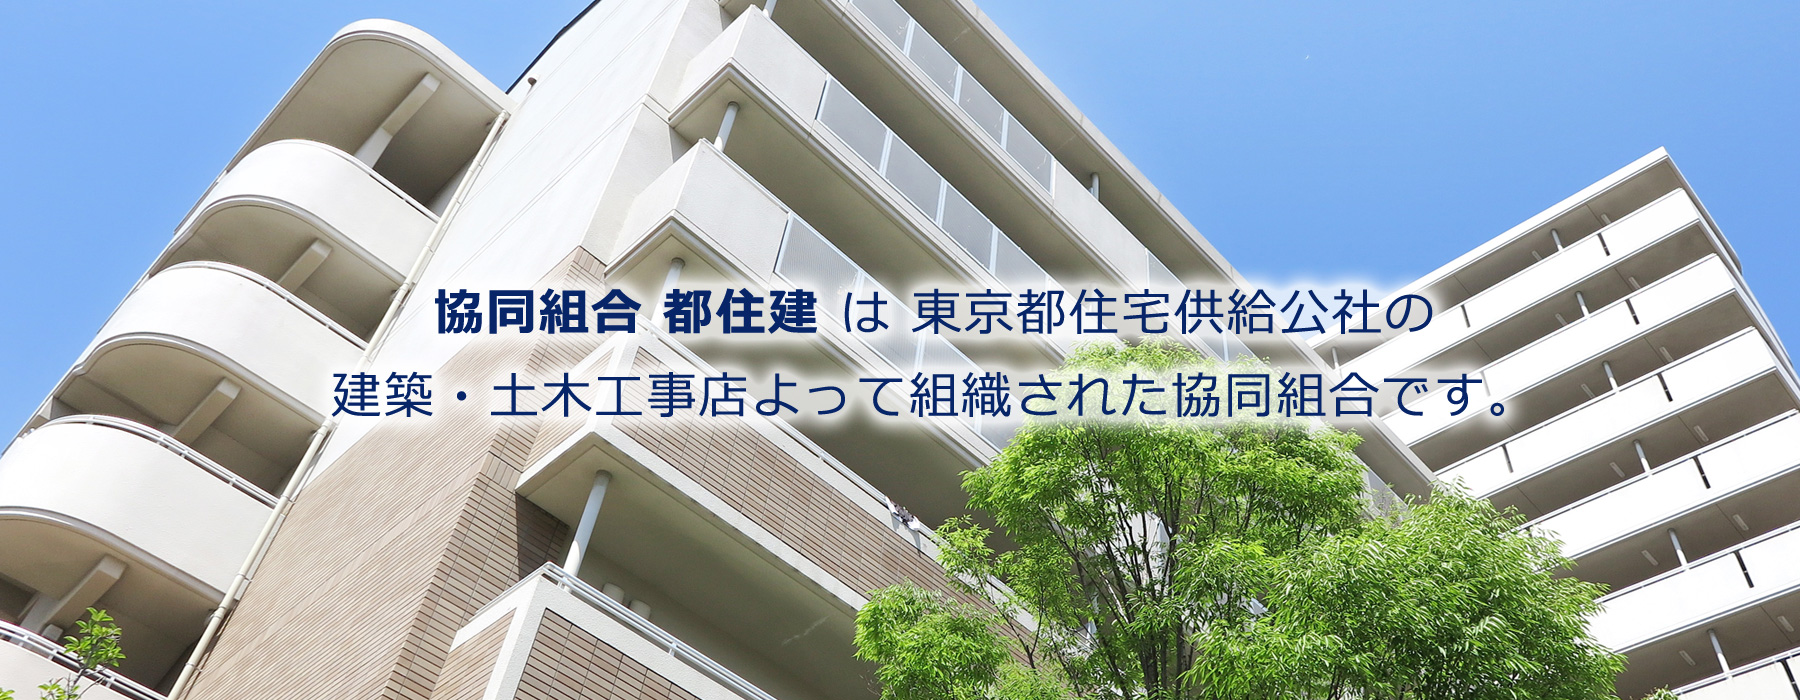 「協同組合 都住建」は東京都住宅供給公社の建築・土木工事店によって組織された協同組合です。